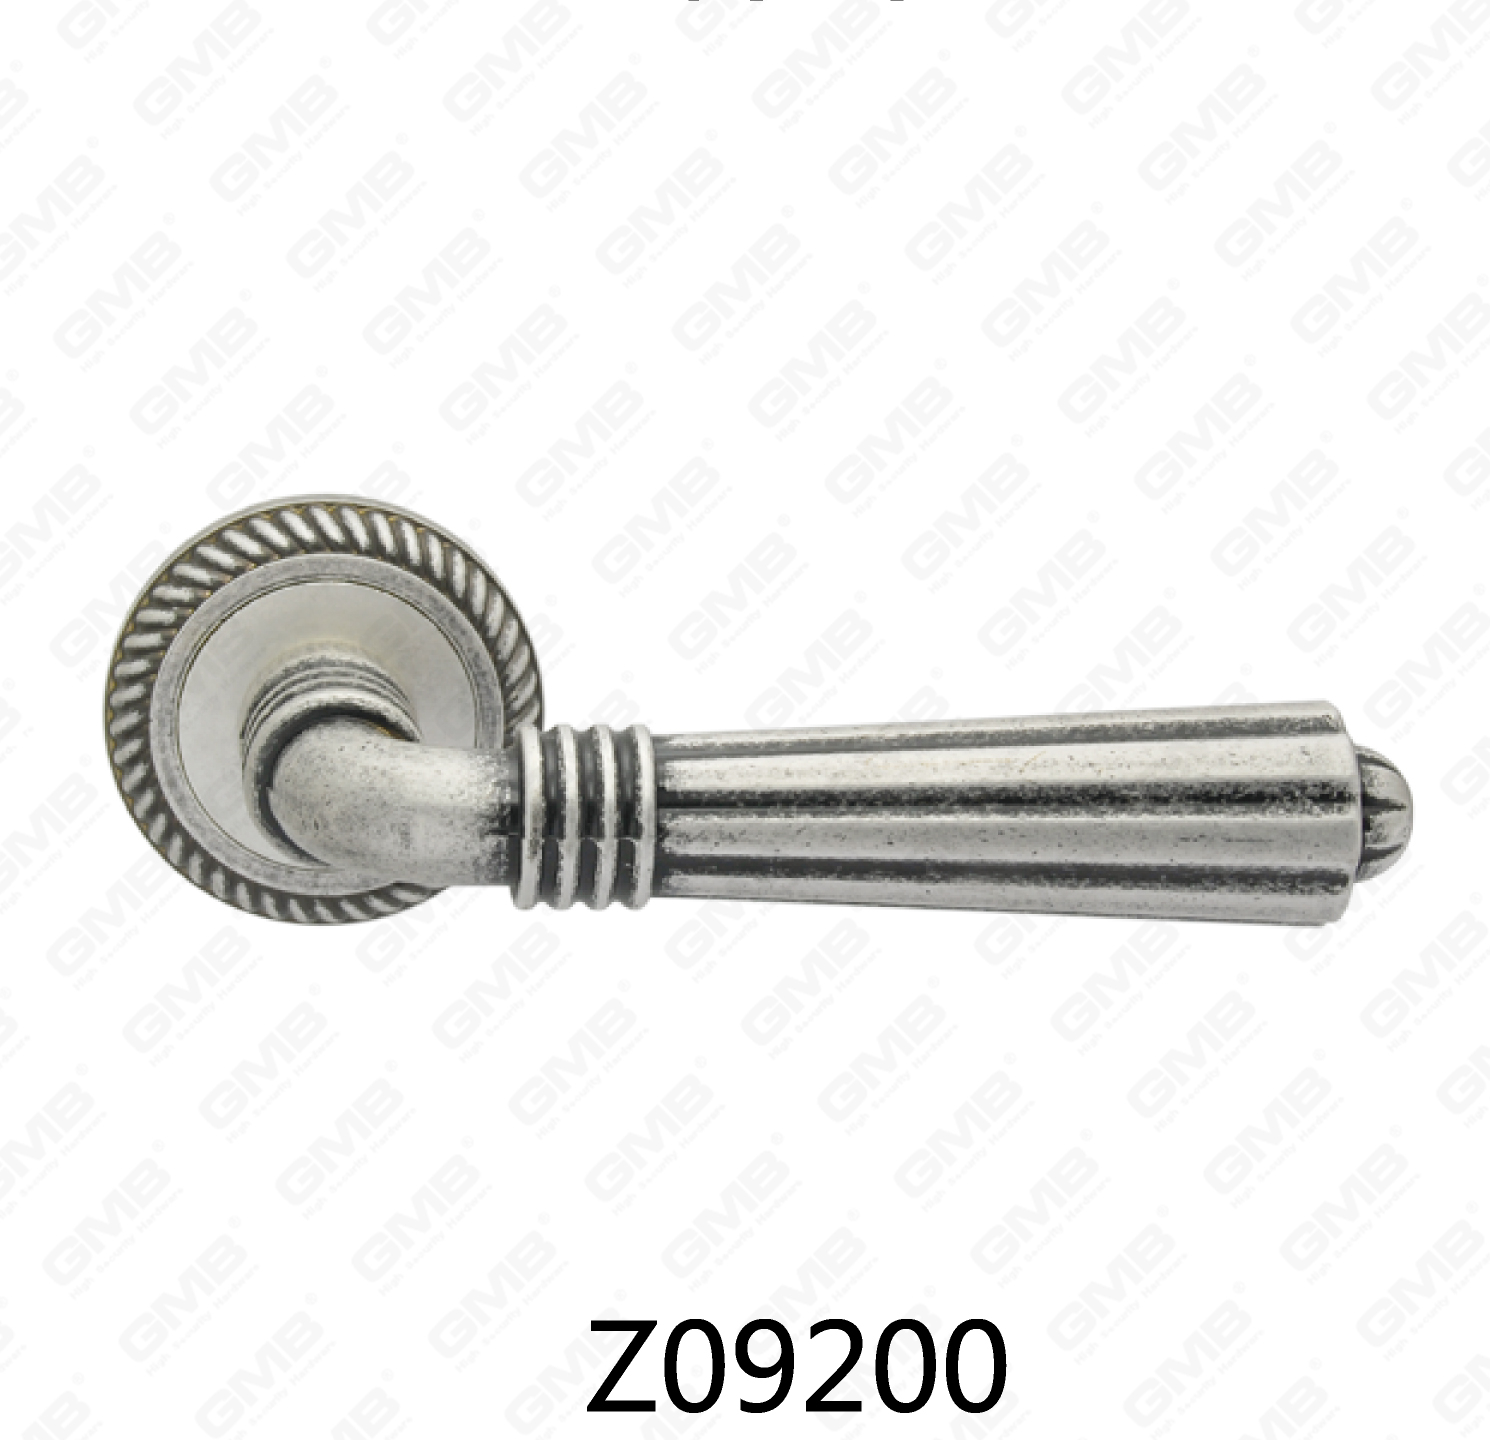 ידית דלת רוזטה מסגסוגת אבץ של Zamak עם רוזטה עגולה (Z09200)